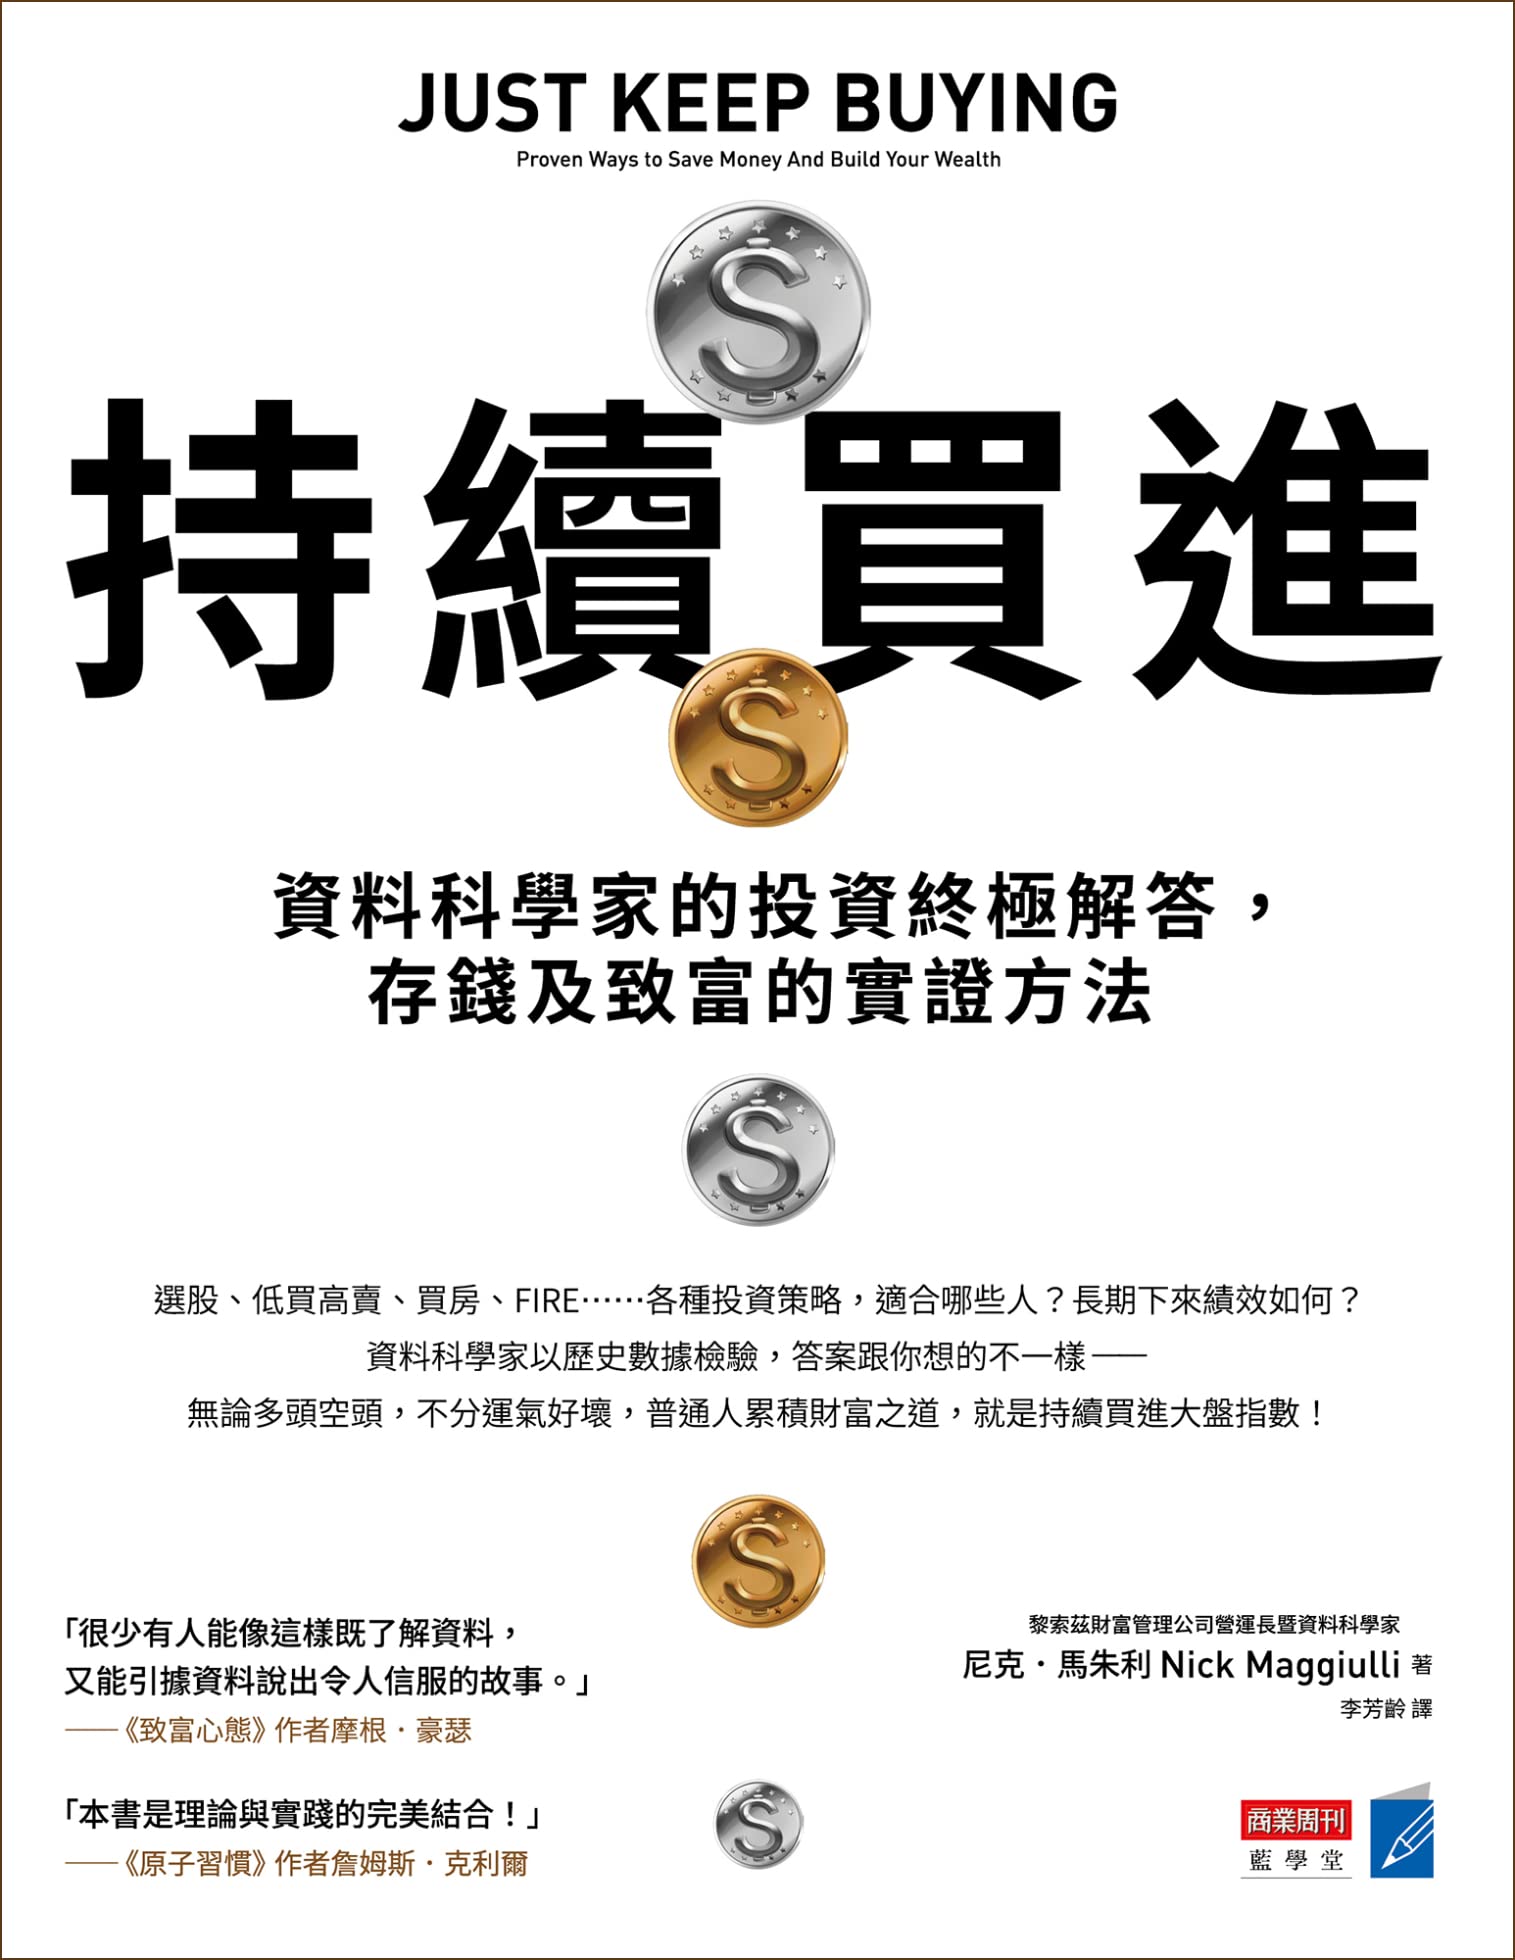 持續買進: 資料科學家的投資終極解答，存錢及致富的實證方法 (Traditional Chinese Edition)